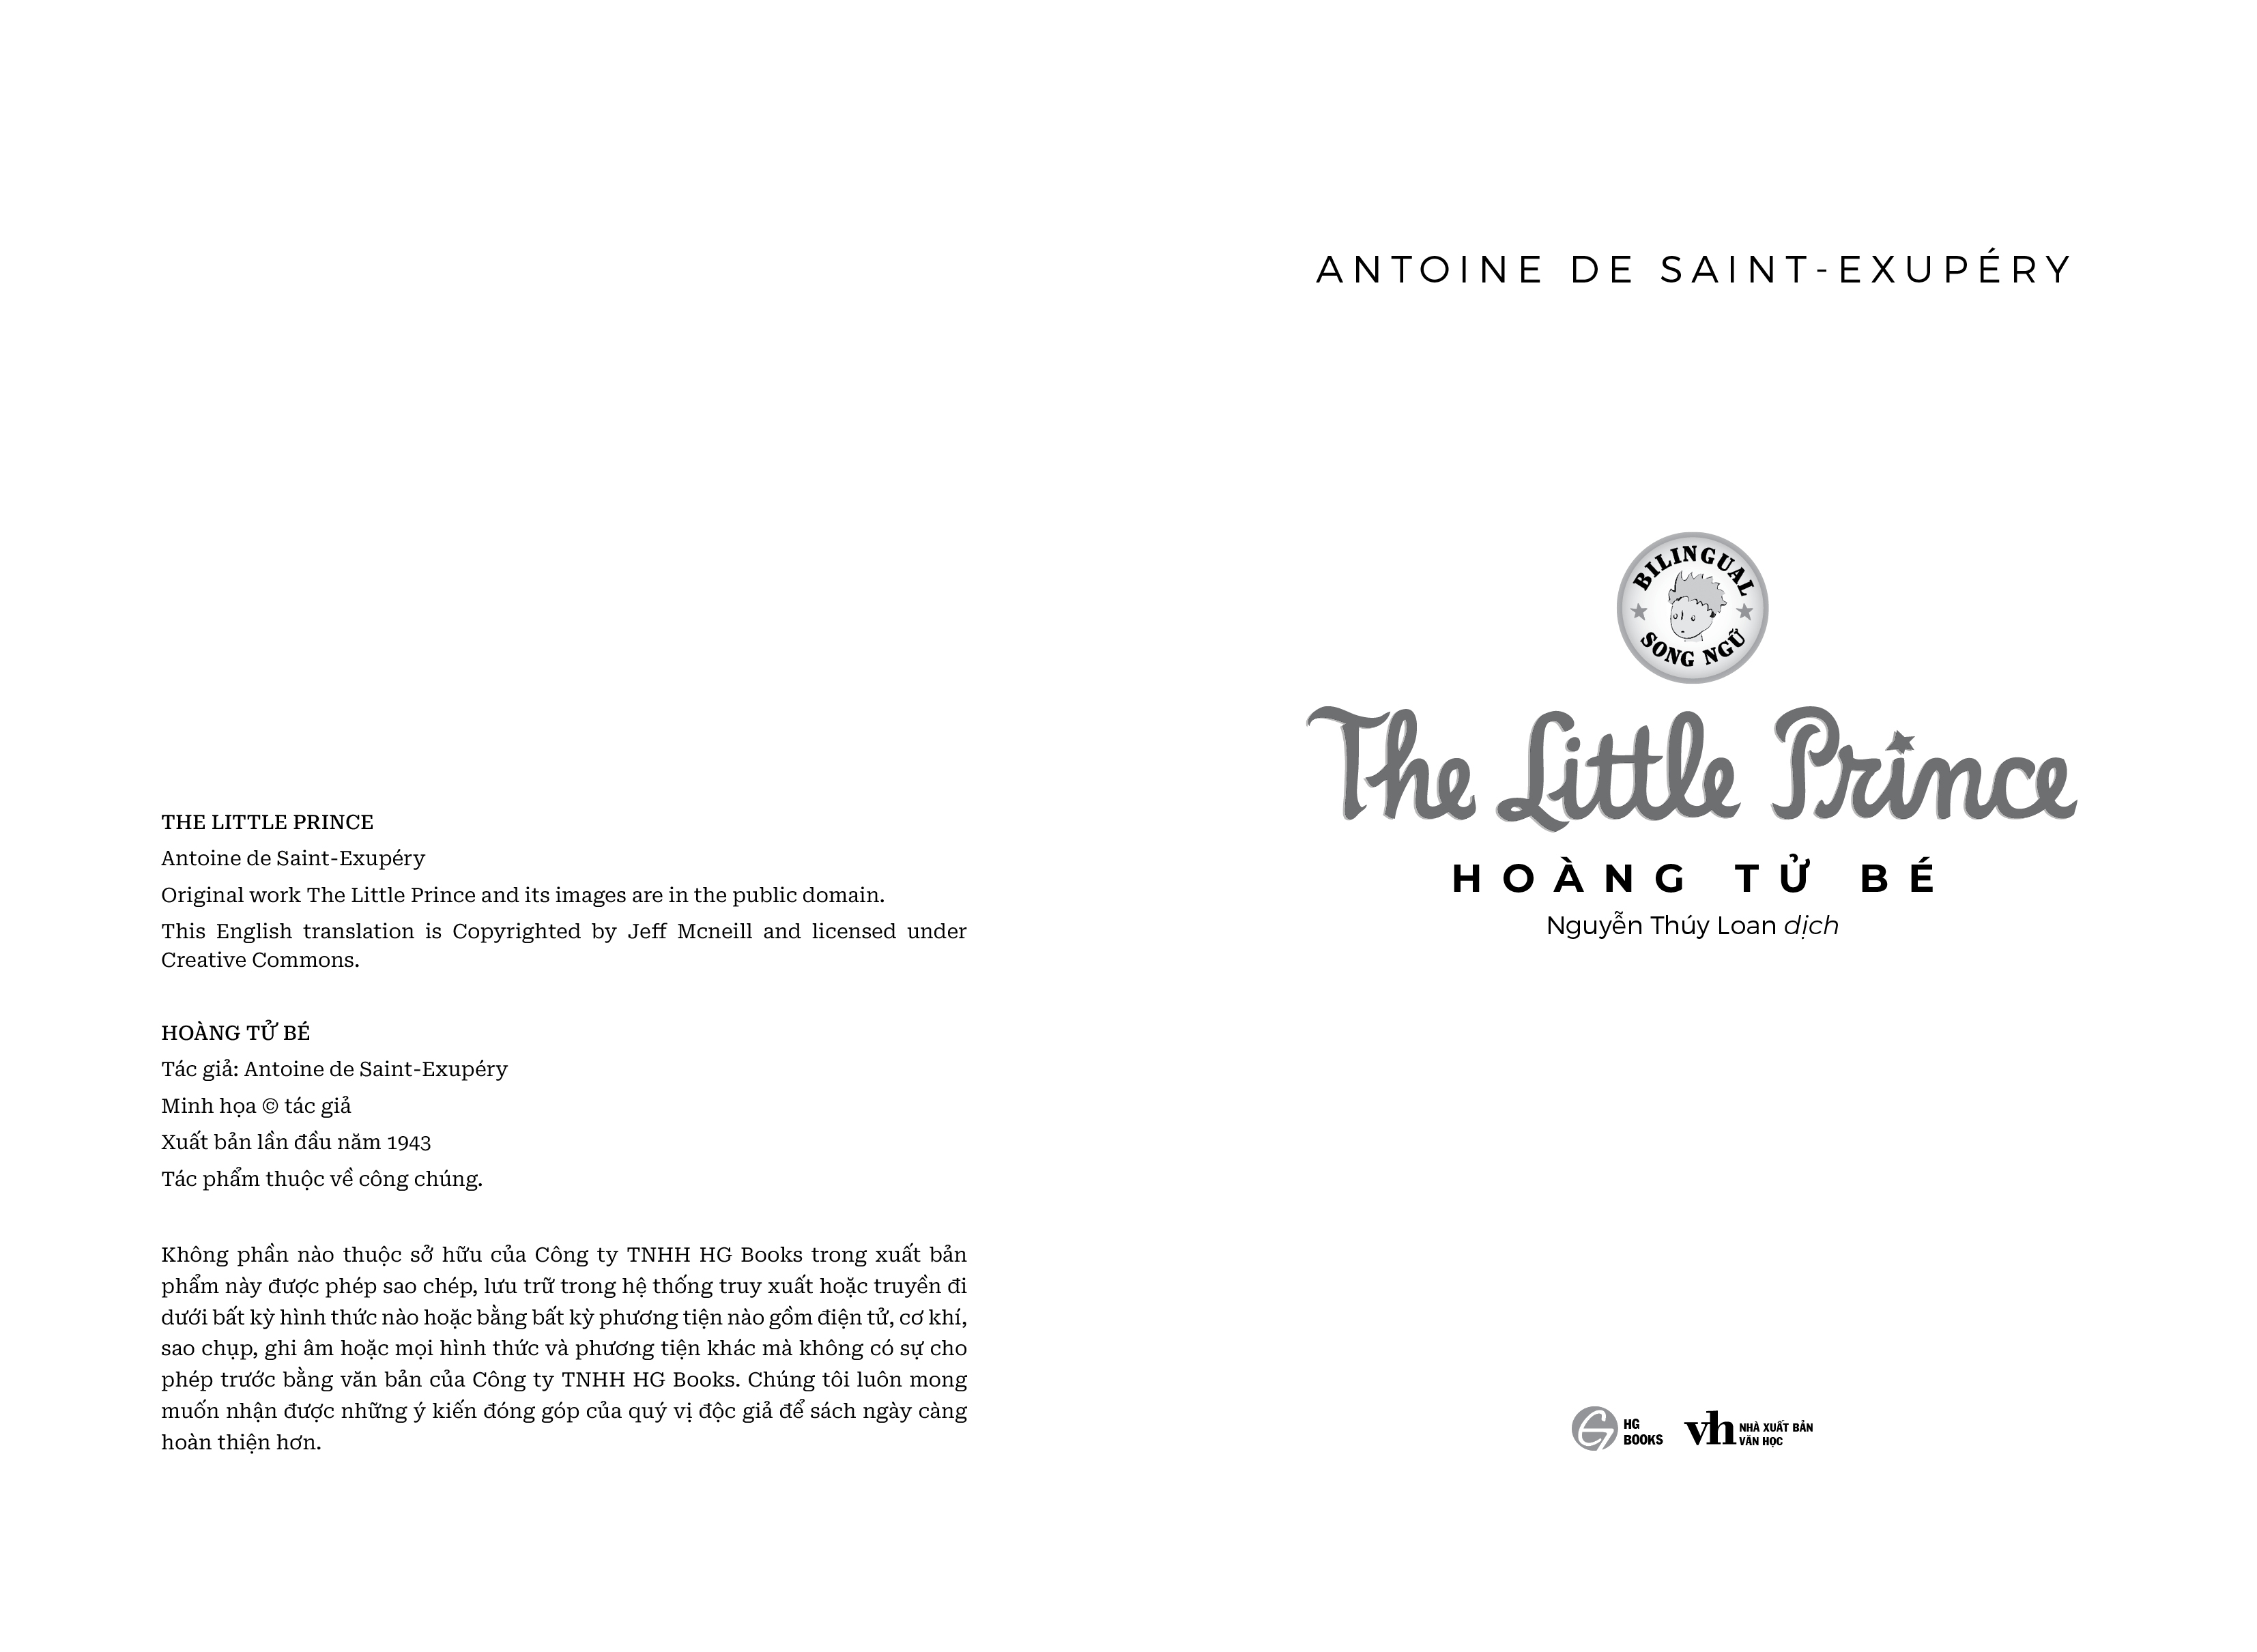 Sách: Hoàng tử bé_The little prince bản Song Ngữ Việt - Anh (kèm file nghe + note từ mới)